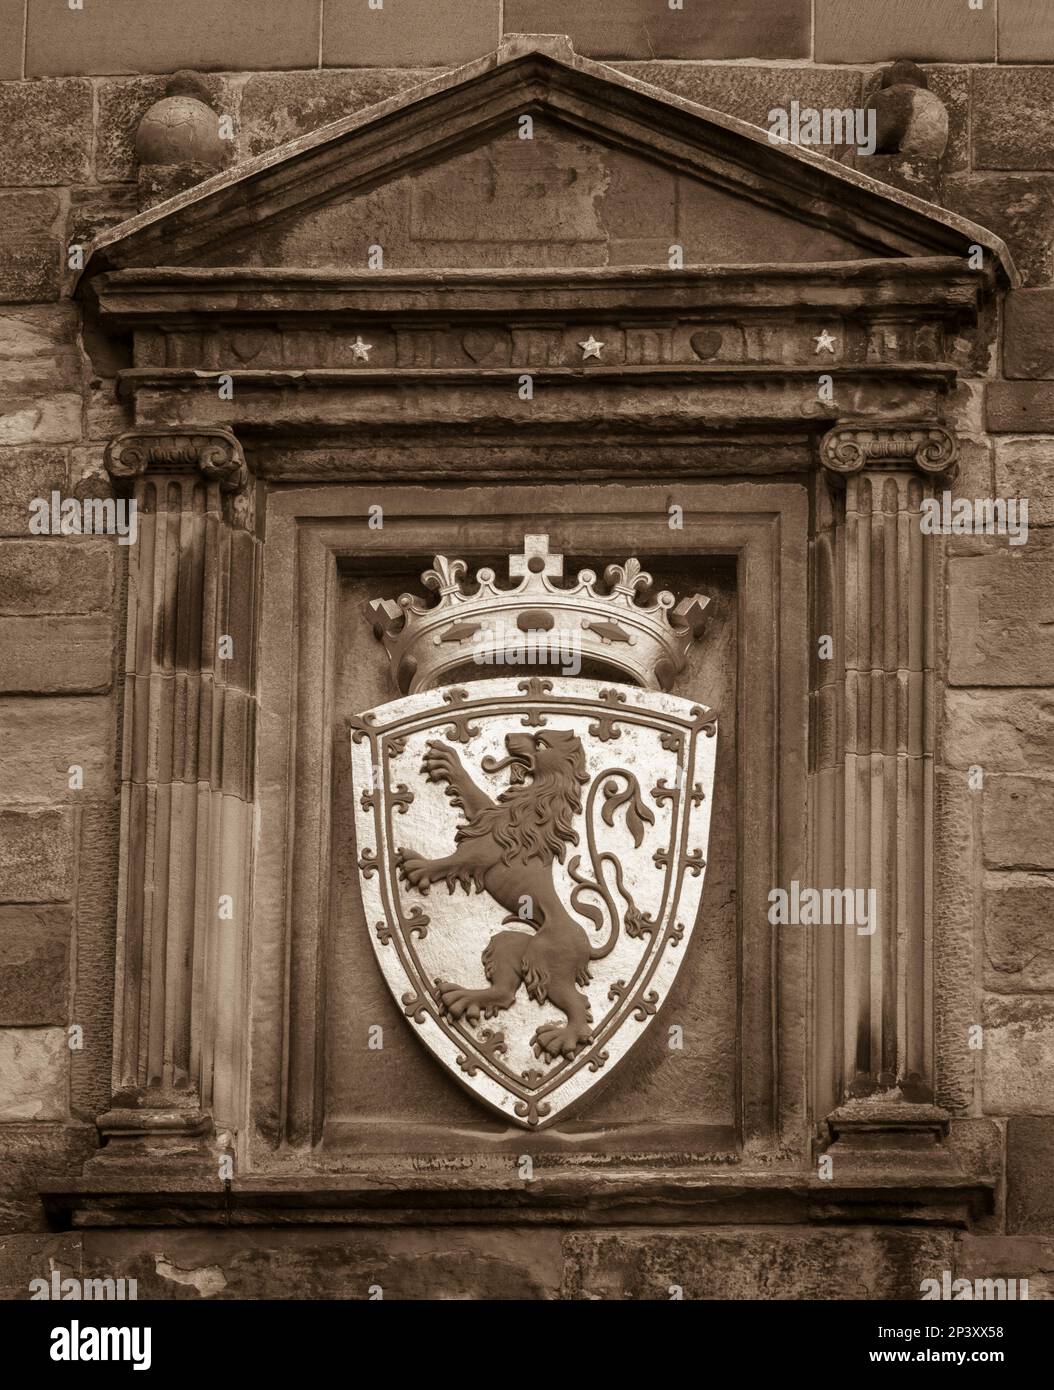 ÉDIMBOURG, ÉCOSSE, EUROPE - armoiries royales à la porte Portcullis du château d'Édimbourg. Inclut le Lion rampant et la couronne royale d'Écosse. Banque D'Images